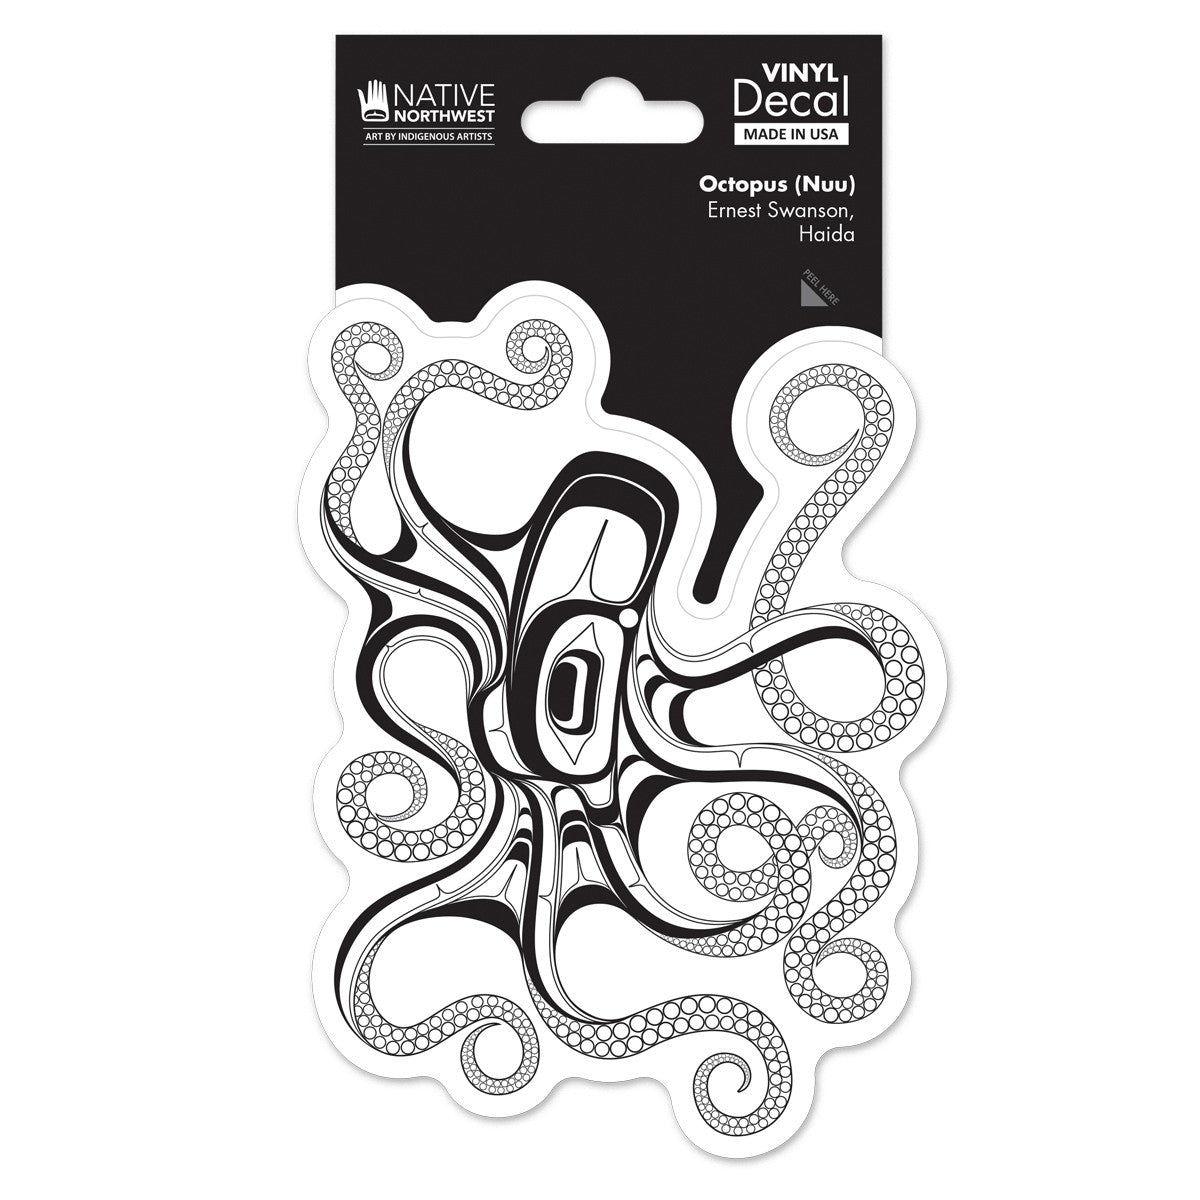 Octopus (Nuu)  Premium Vinyl Decal